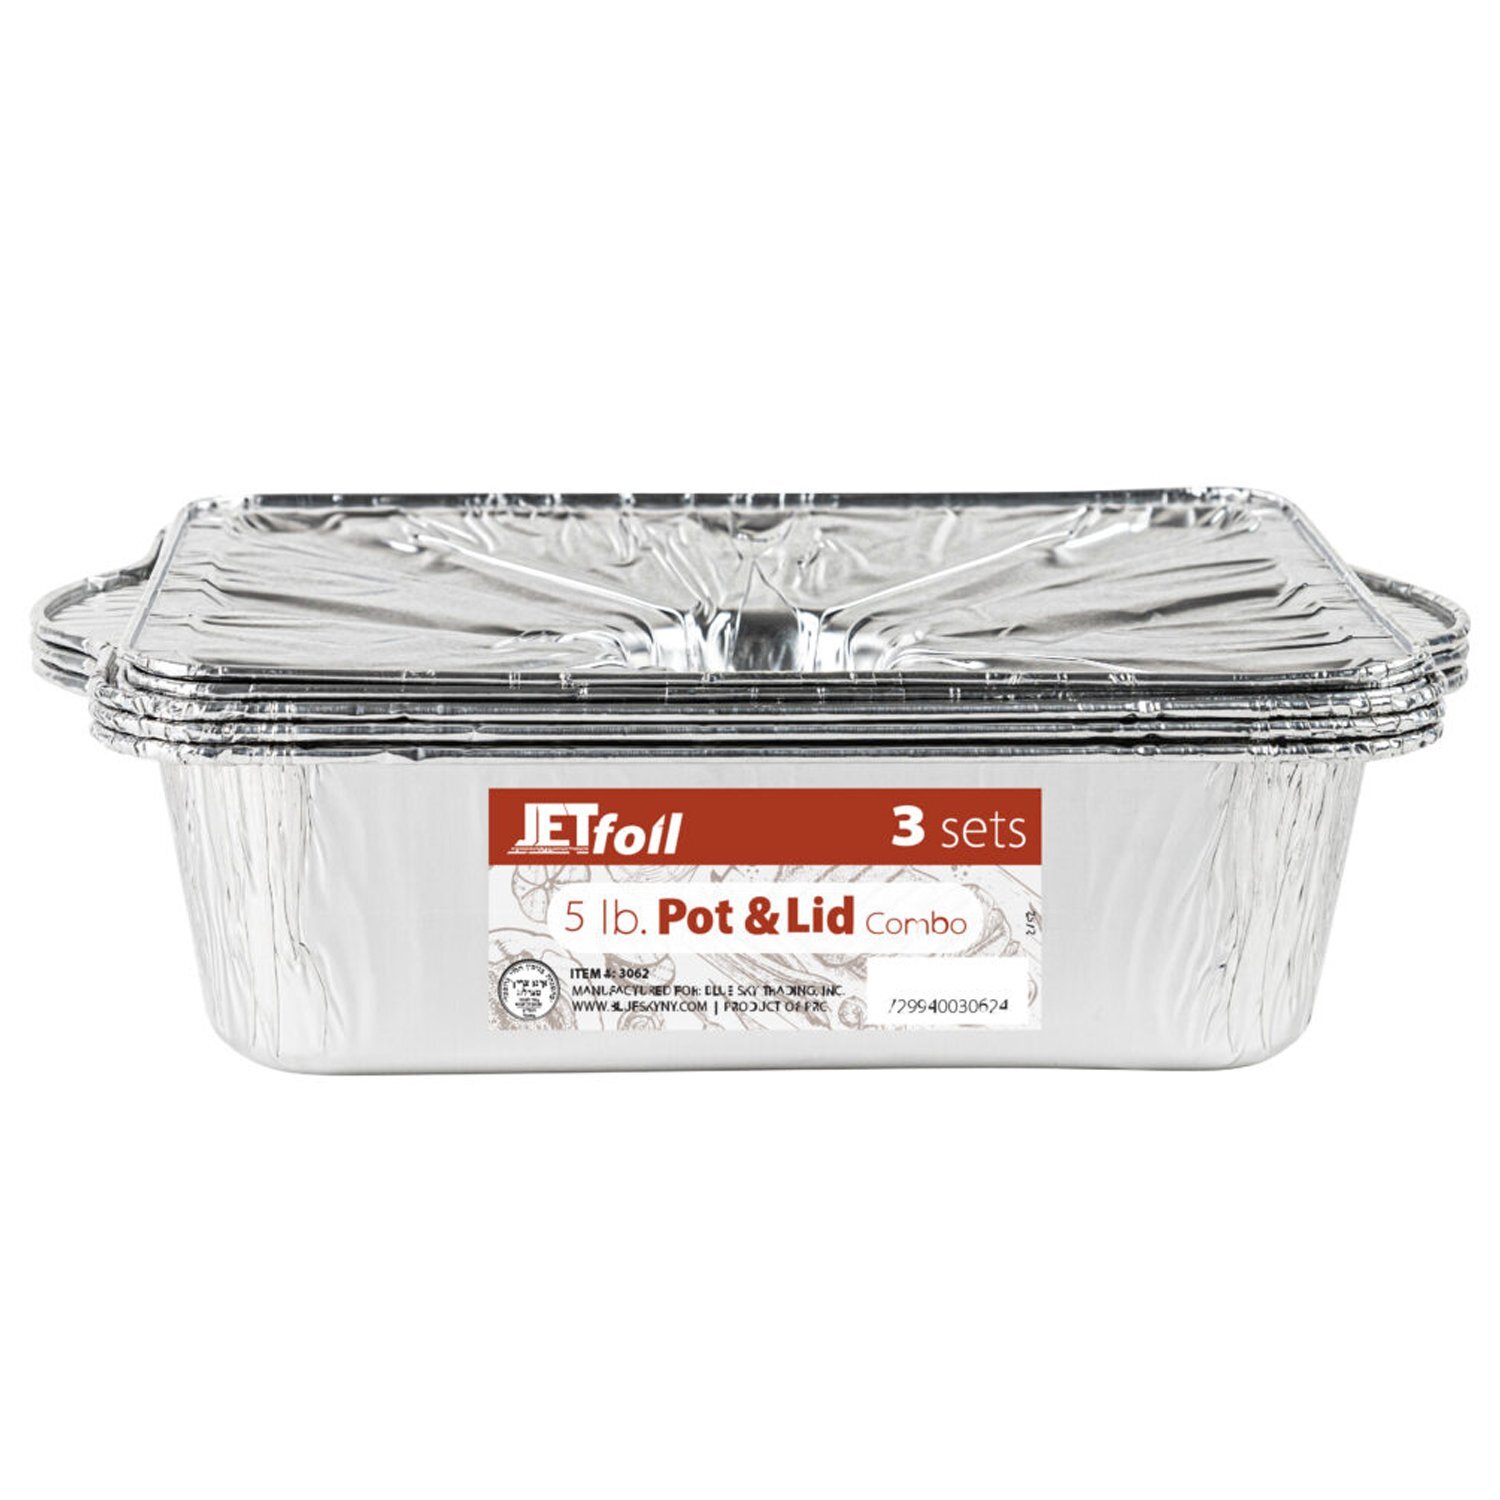 Jet Foil Disposable Aluminum Large Rectangle Pots with Lids Combo